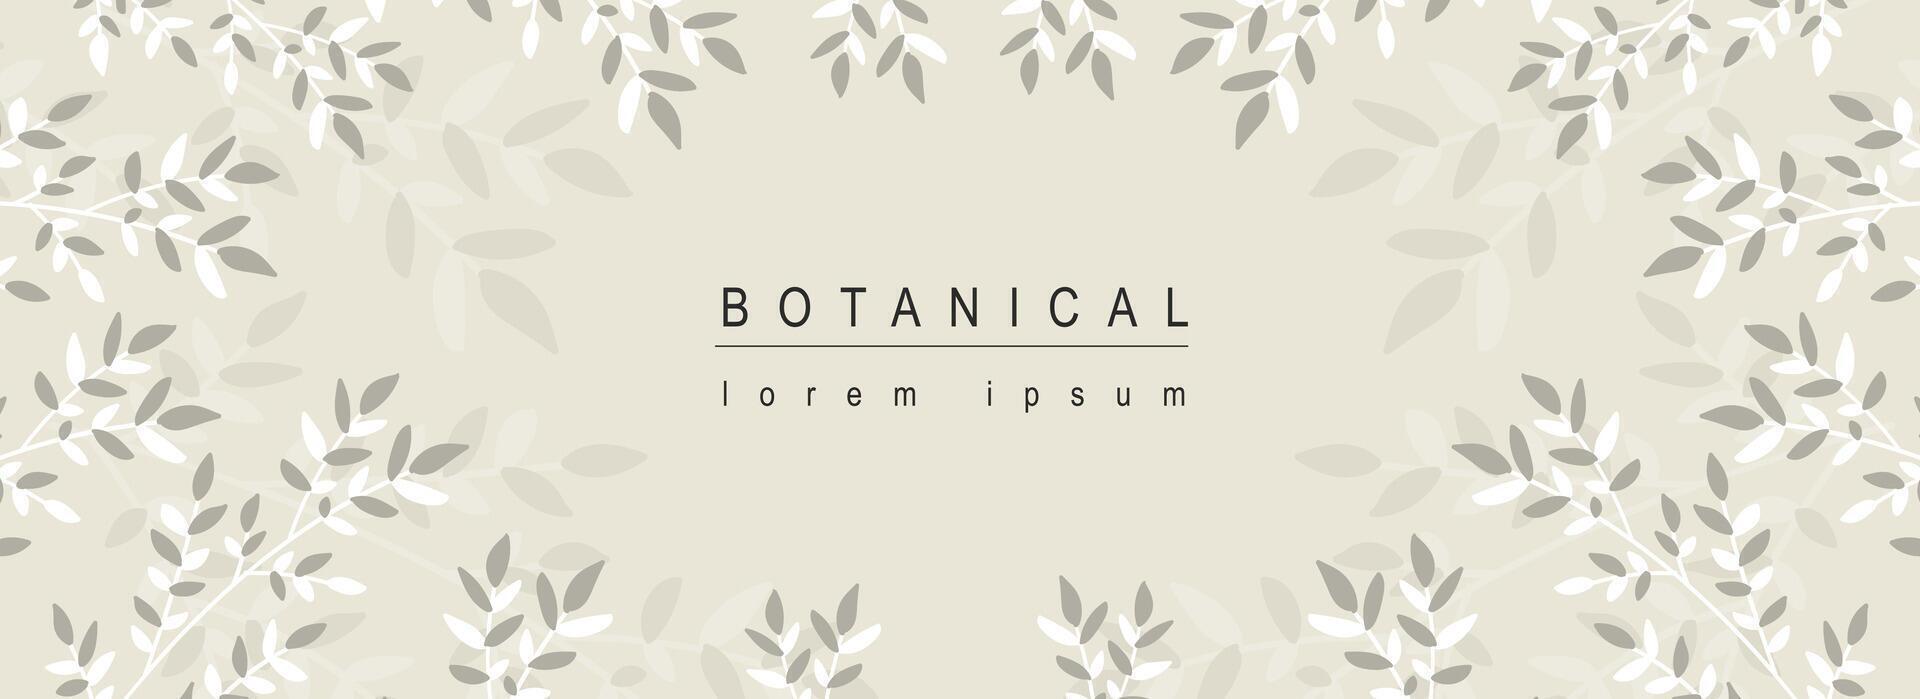 botanisk abstrakt bakgrund med blommig linje konst design. horisontell webb baner med svartvit vinjettering ram med örter, kvistar, grenar med löv och lövverk växter. vektor illustration.